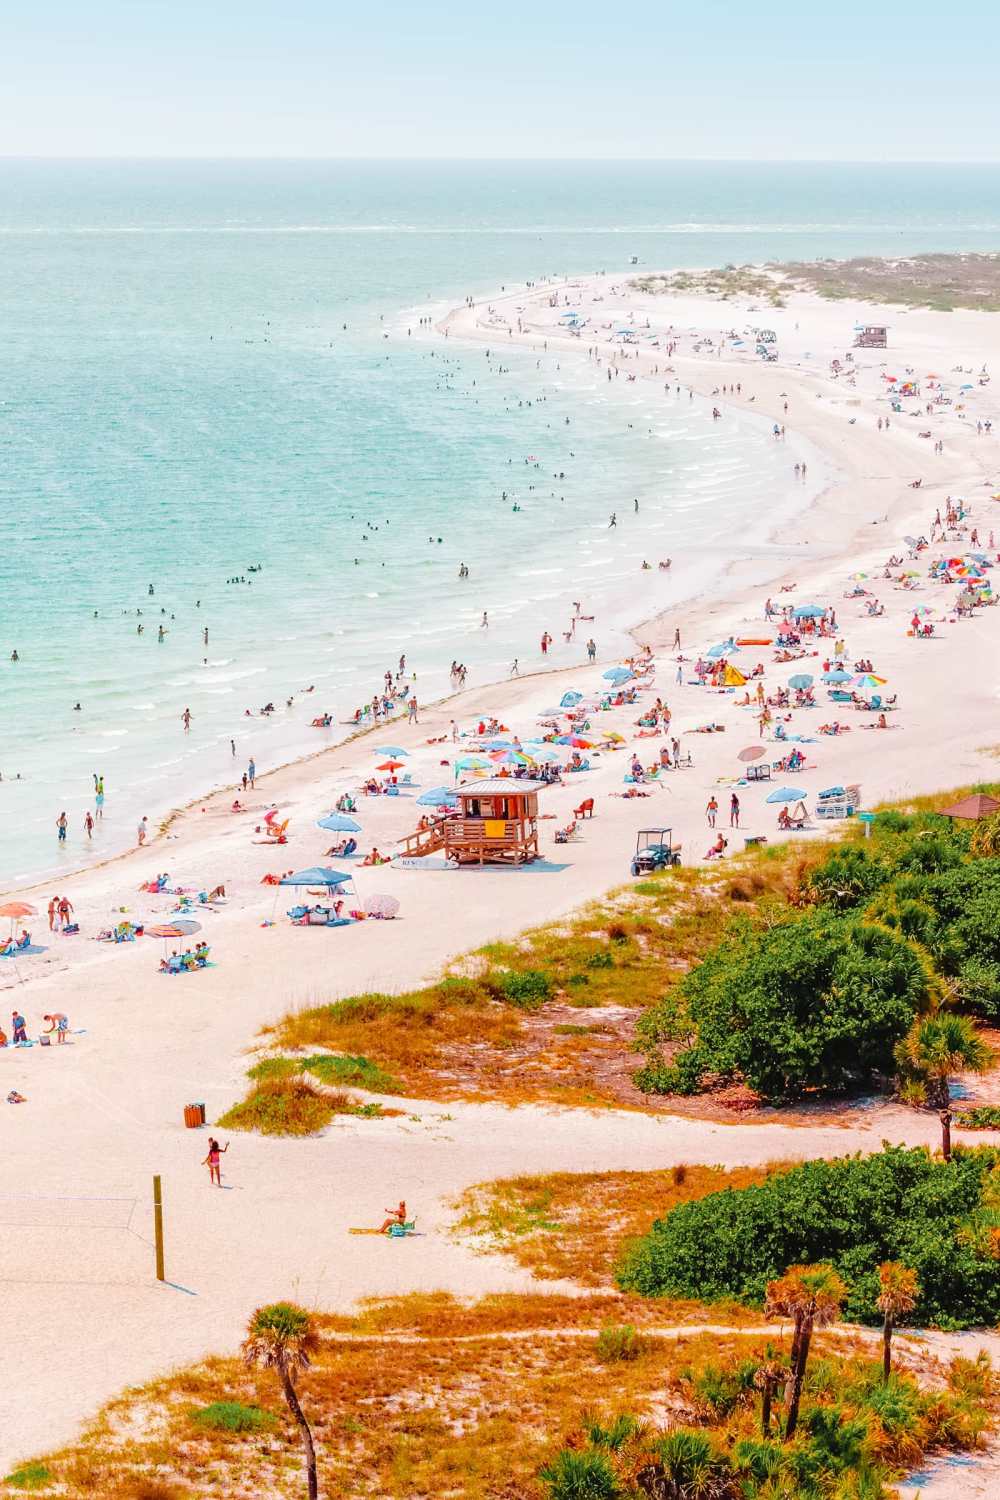  Самые лучшие пляжи Флориды для посещения "width =" 1000 "height =" 1500 "data-jpibfi-post-excerpt =" "data-jpibfi-post-url =" https://handluggageonly.co.uk/2021/07/12/14-very-best-beaches-in -florida-to-visit / "data-jpibfi-post-title =" 14 самых лучших пляжей Флориды для посещения "data-jpibfi-src =" https://i1.wp.com/handluggageonly.co.uk/wp -content / uploads / 2021/07 / HandLgageOnly-5.jpg? resize = 1000% 2C1500 & ssl = 1 "data-recalc-dims =" 1 "/> </p>
<p> Расположенный в великолепном Мексиканском заливе, Siesta Key – это полностью блаженный барьерный остров с очарованием, столь же привлекательным, как и они сами! </p>
<p> А еще лучше, пляжи Сиеста-Ки никогда не разочаруют, и это одни из лучших пляжей во Флориде для посещения. С сияющим белым песком и жаркой температурой воды. это место, куда можно пойти всей семьей. </p>
<p> Это особенно y правда, поскольку волны немного спокойнее, чем на Атлантическом побережье; однако это не значит, что вам не следует проявлять особую осторожность. Помните, море может быть опасным. </p>
<p style=